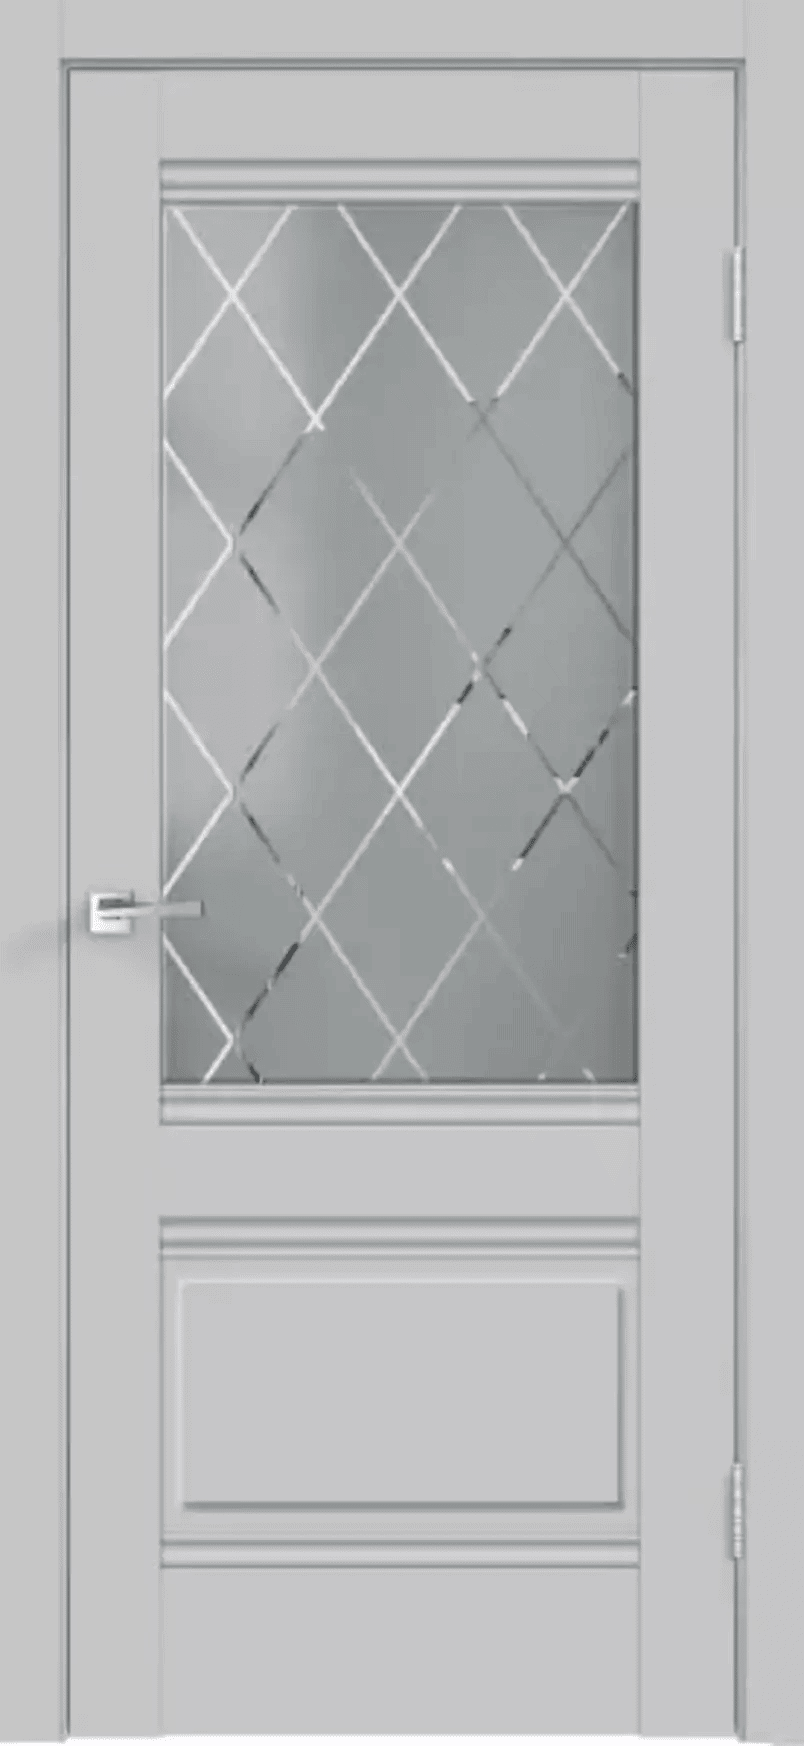 91086441 Межкомнатная дверь Alto остеклённая без замка и петель в комплекте 200x90см серый STLM-0476978 VELLDORIS